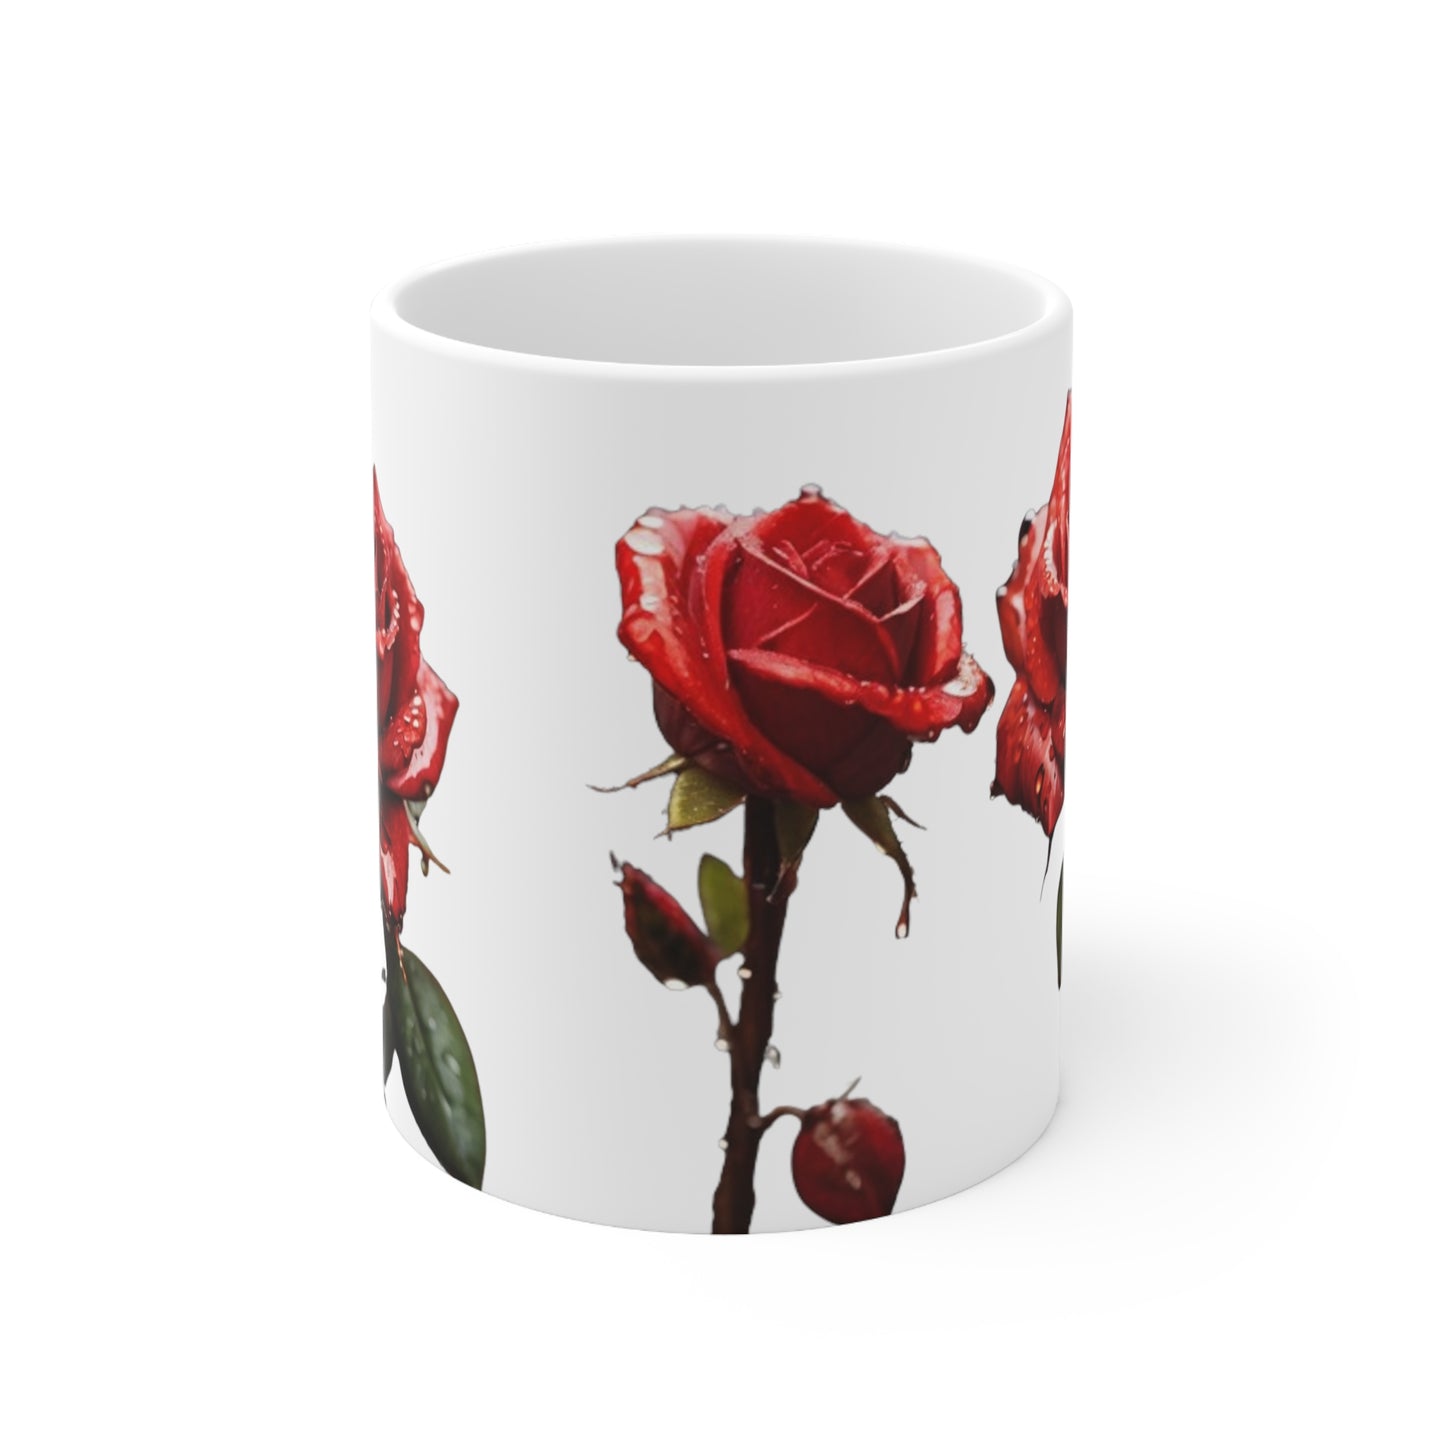 Red Roses Covered In Rain Drops Mug - Ceramic Coffee Mug 11oz